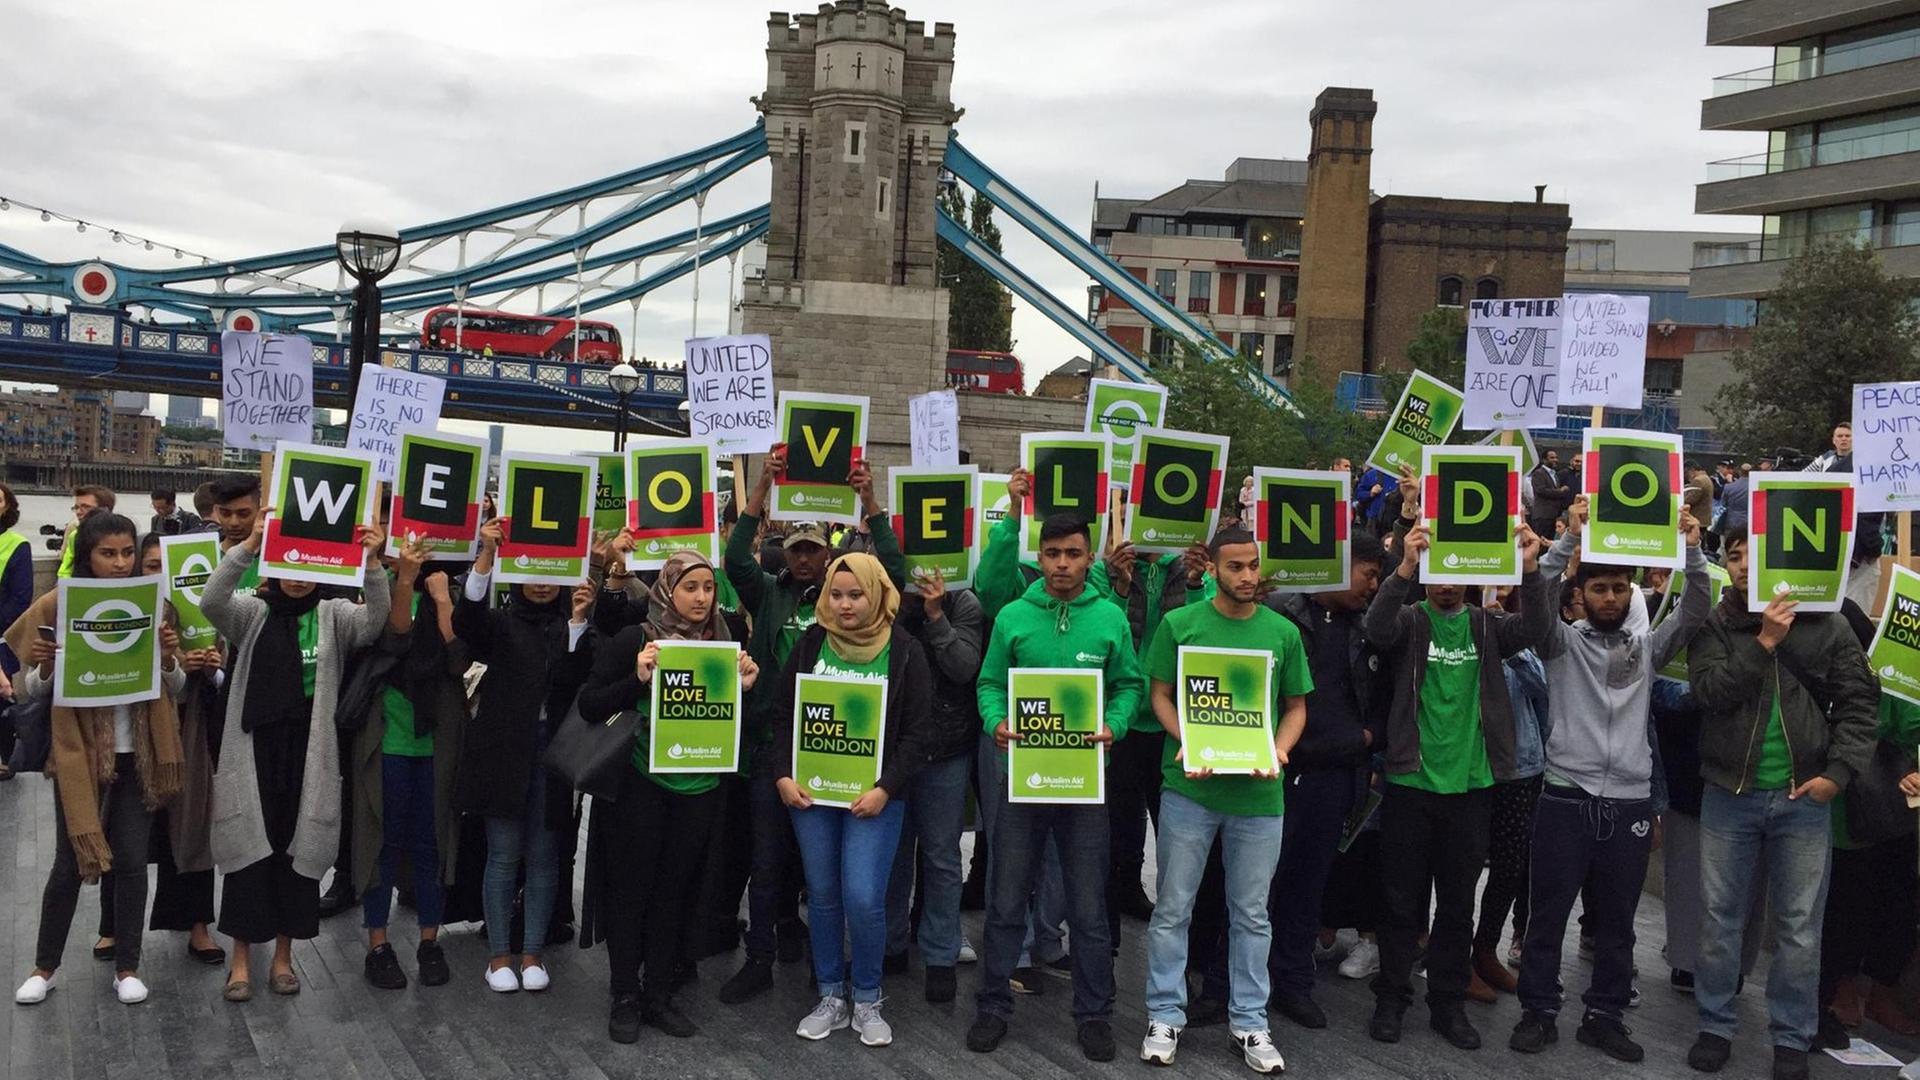 Menschen stehen vor der London Bridge und halten Schilder mit "We love London" in die Höhe.